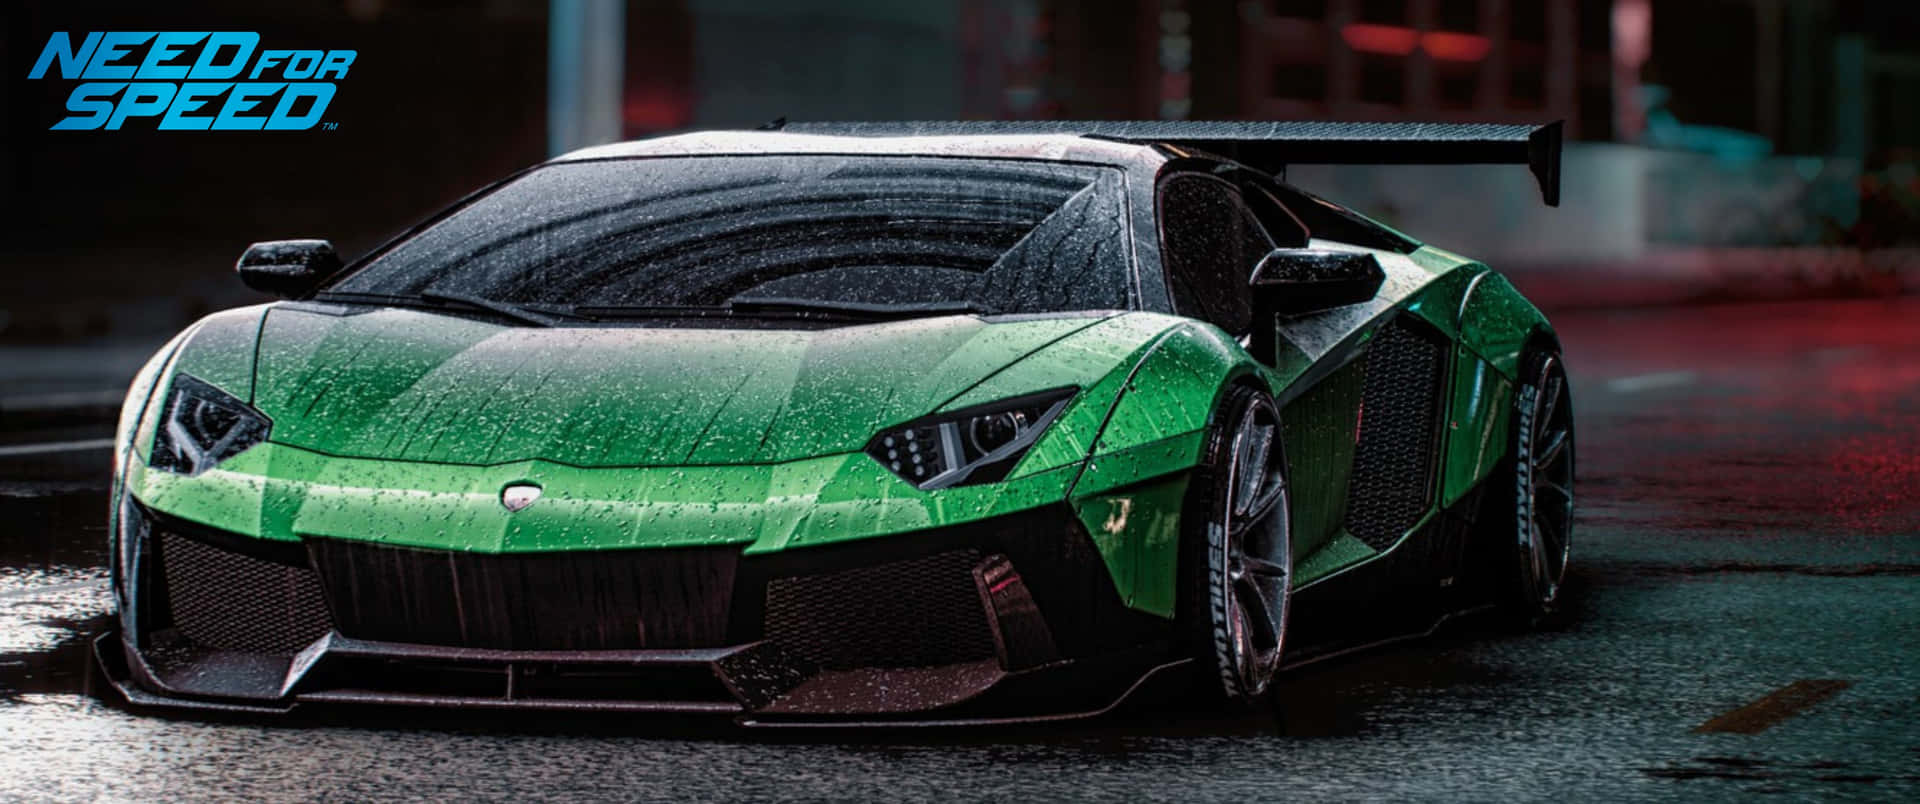 Behovetav Hastighet - En Grön Bil På En Regnig Dag